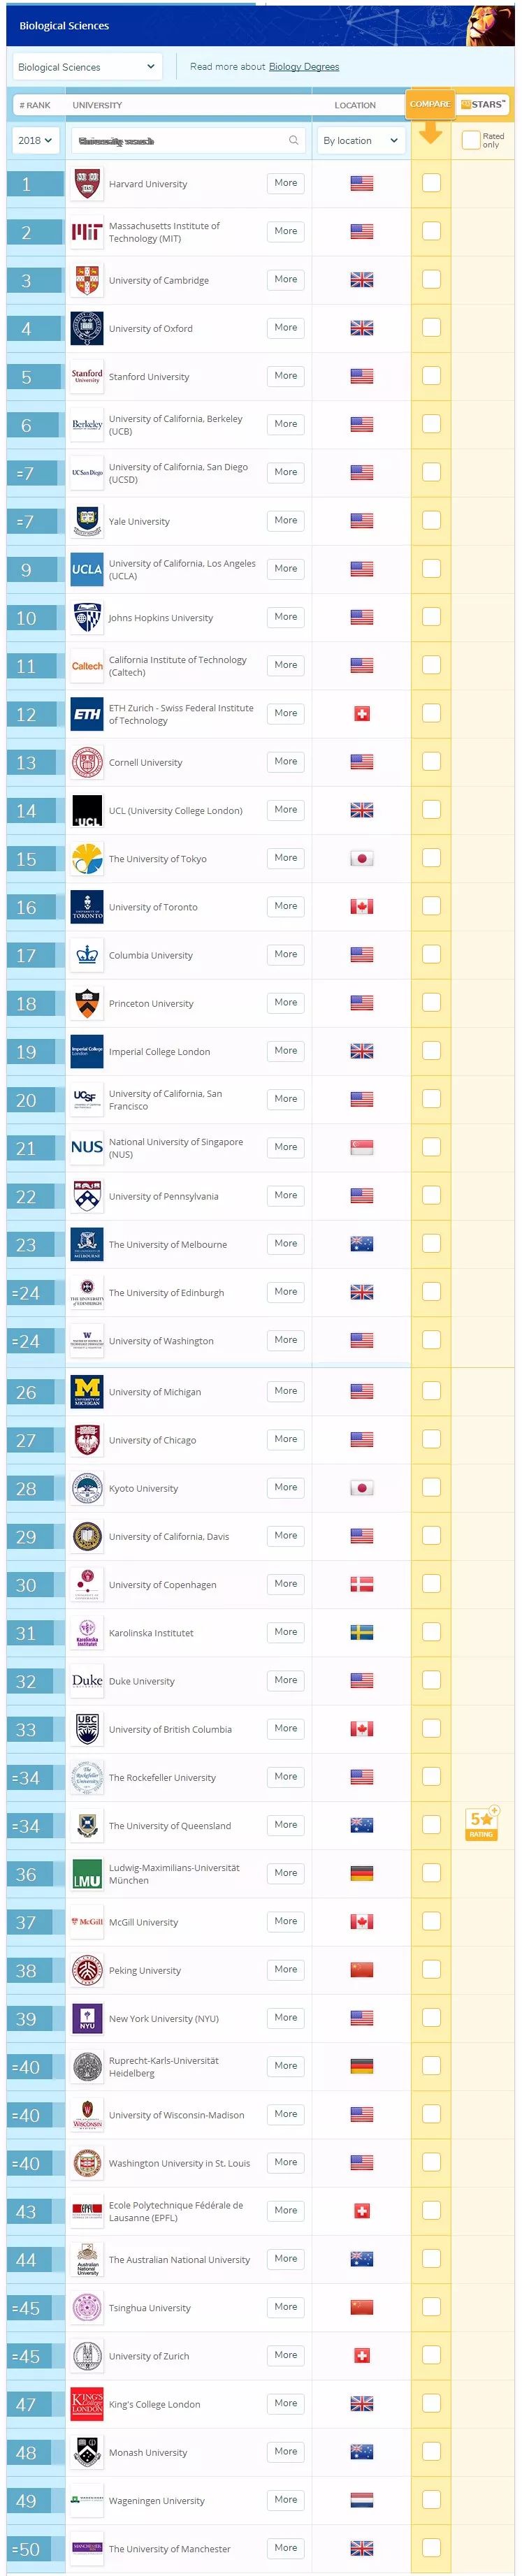 2018QS世界大学生命科学与医学类6大学科排名